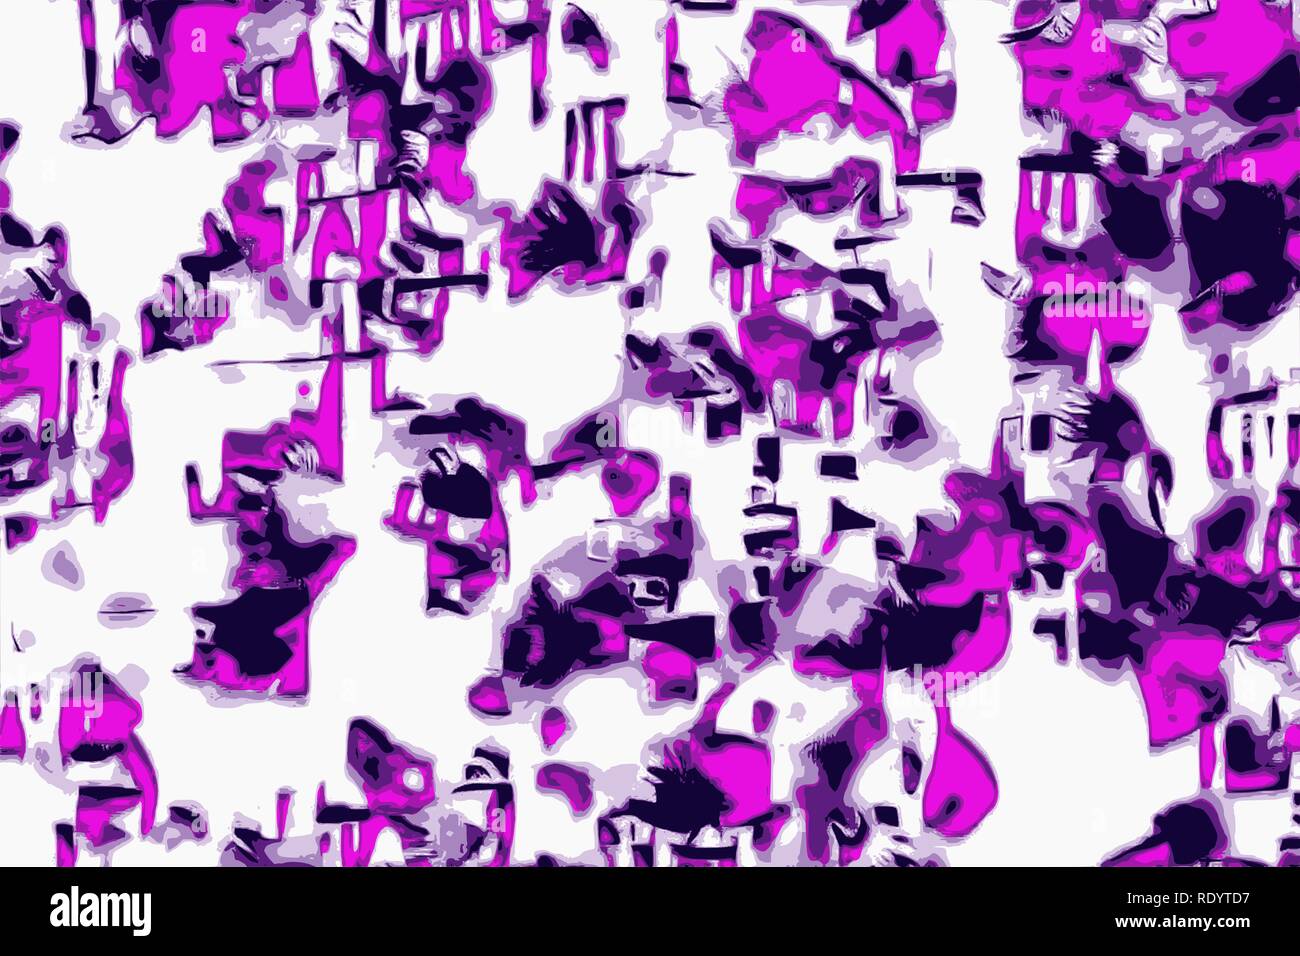 Retrowave sfondo astratto con vistose funky colore viola Foto Stock